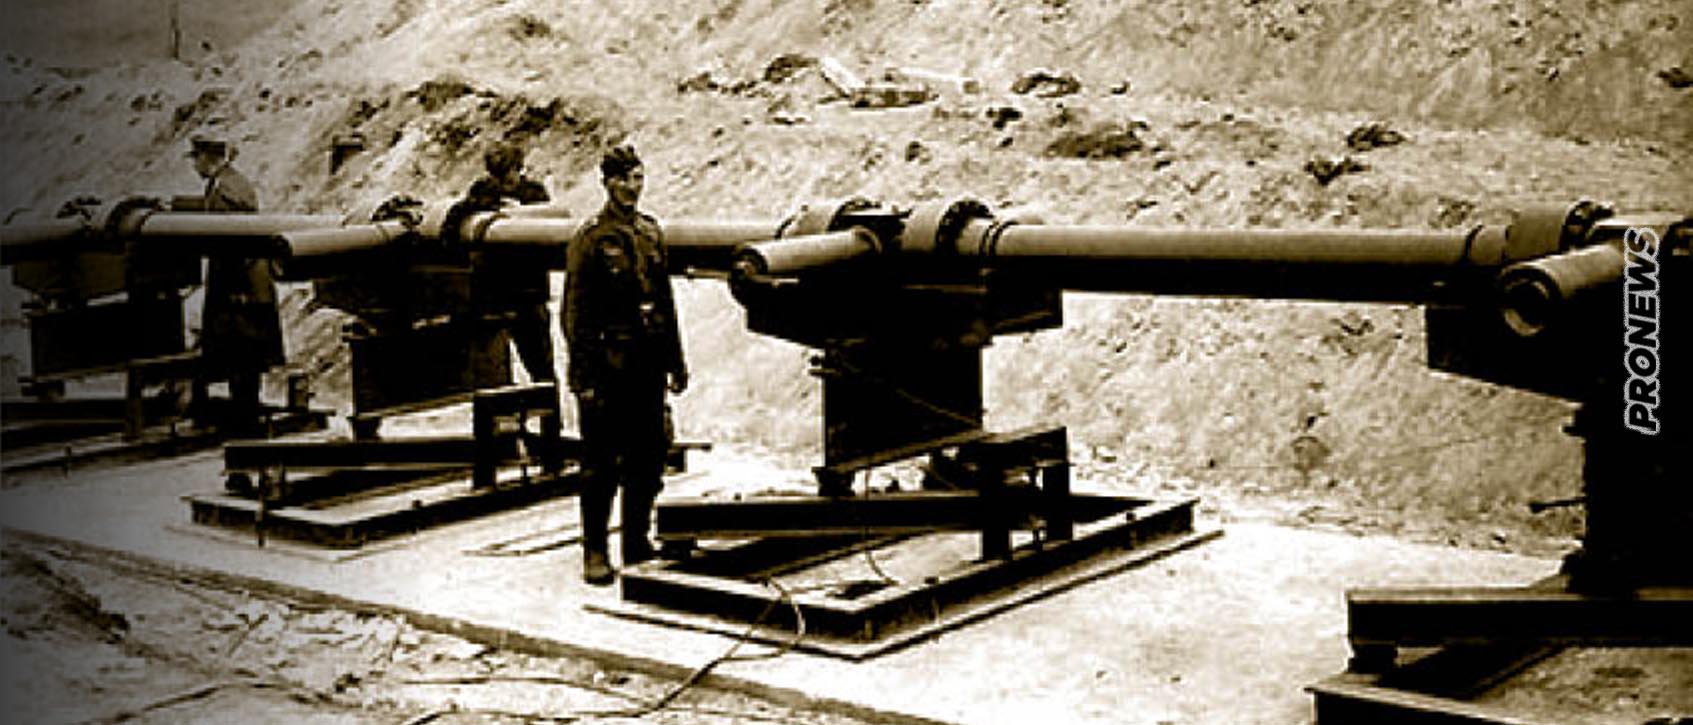 Το άγνωστο μυστικό όπλο της Γερμανίας στον Β’ΠΠ: Τα υπερπυροβόλα του Χίτλερ